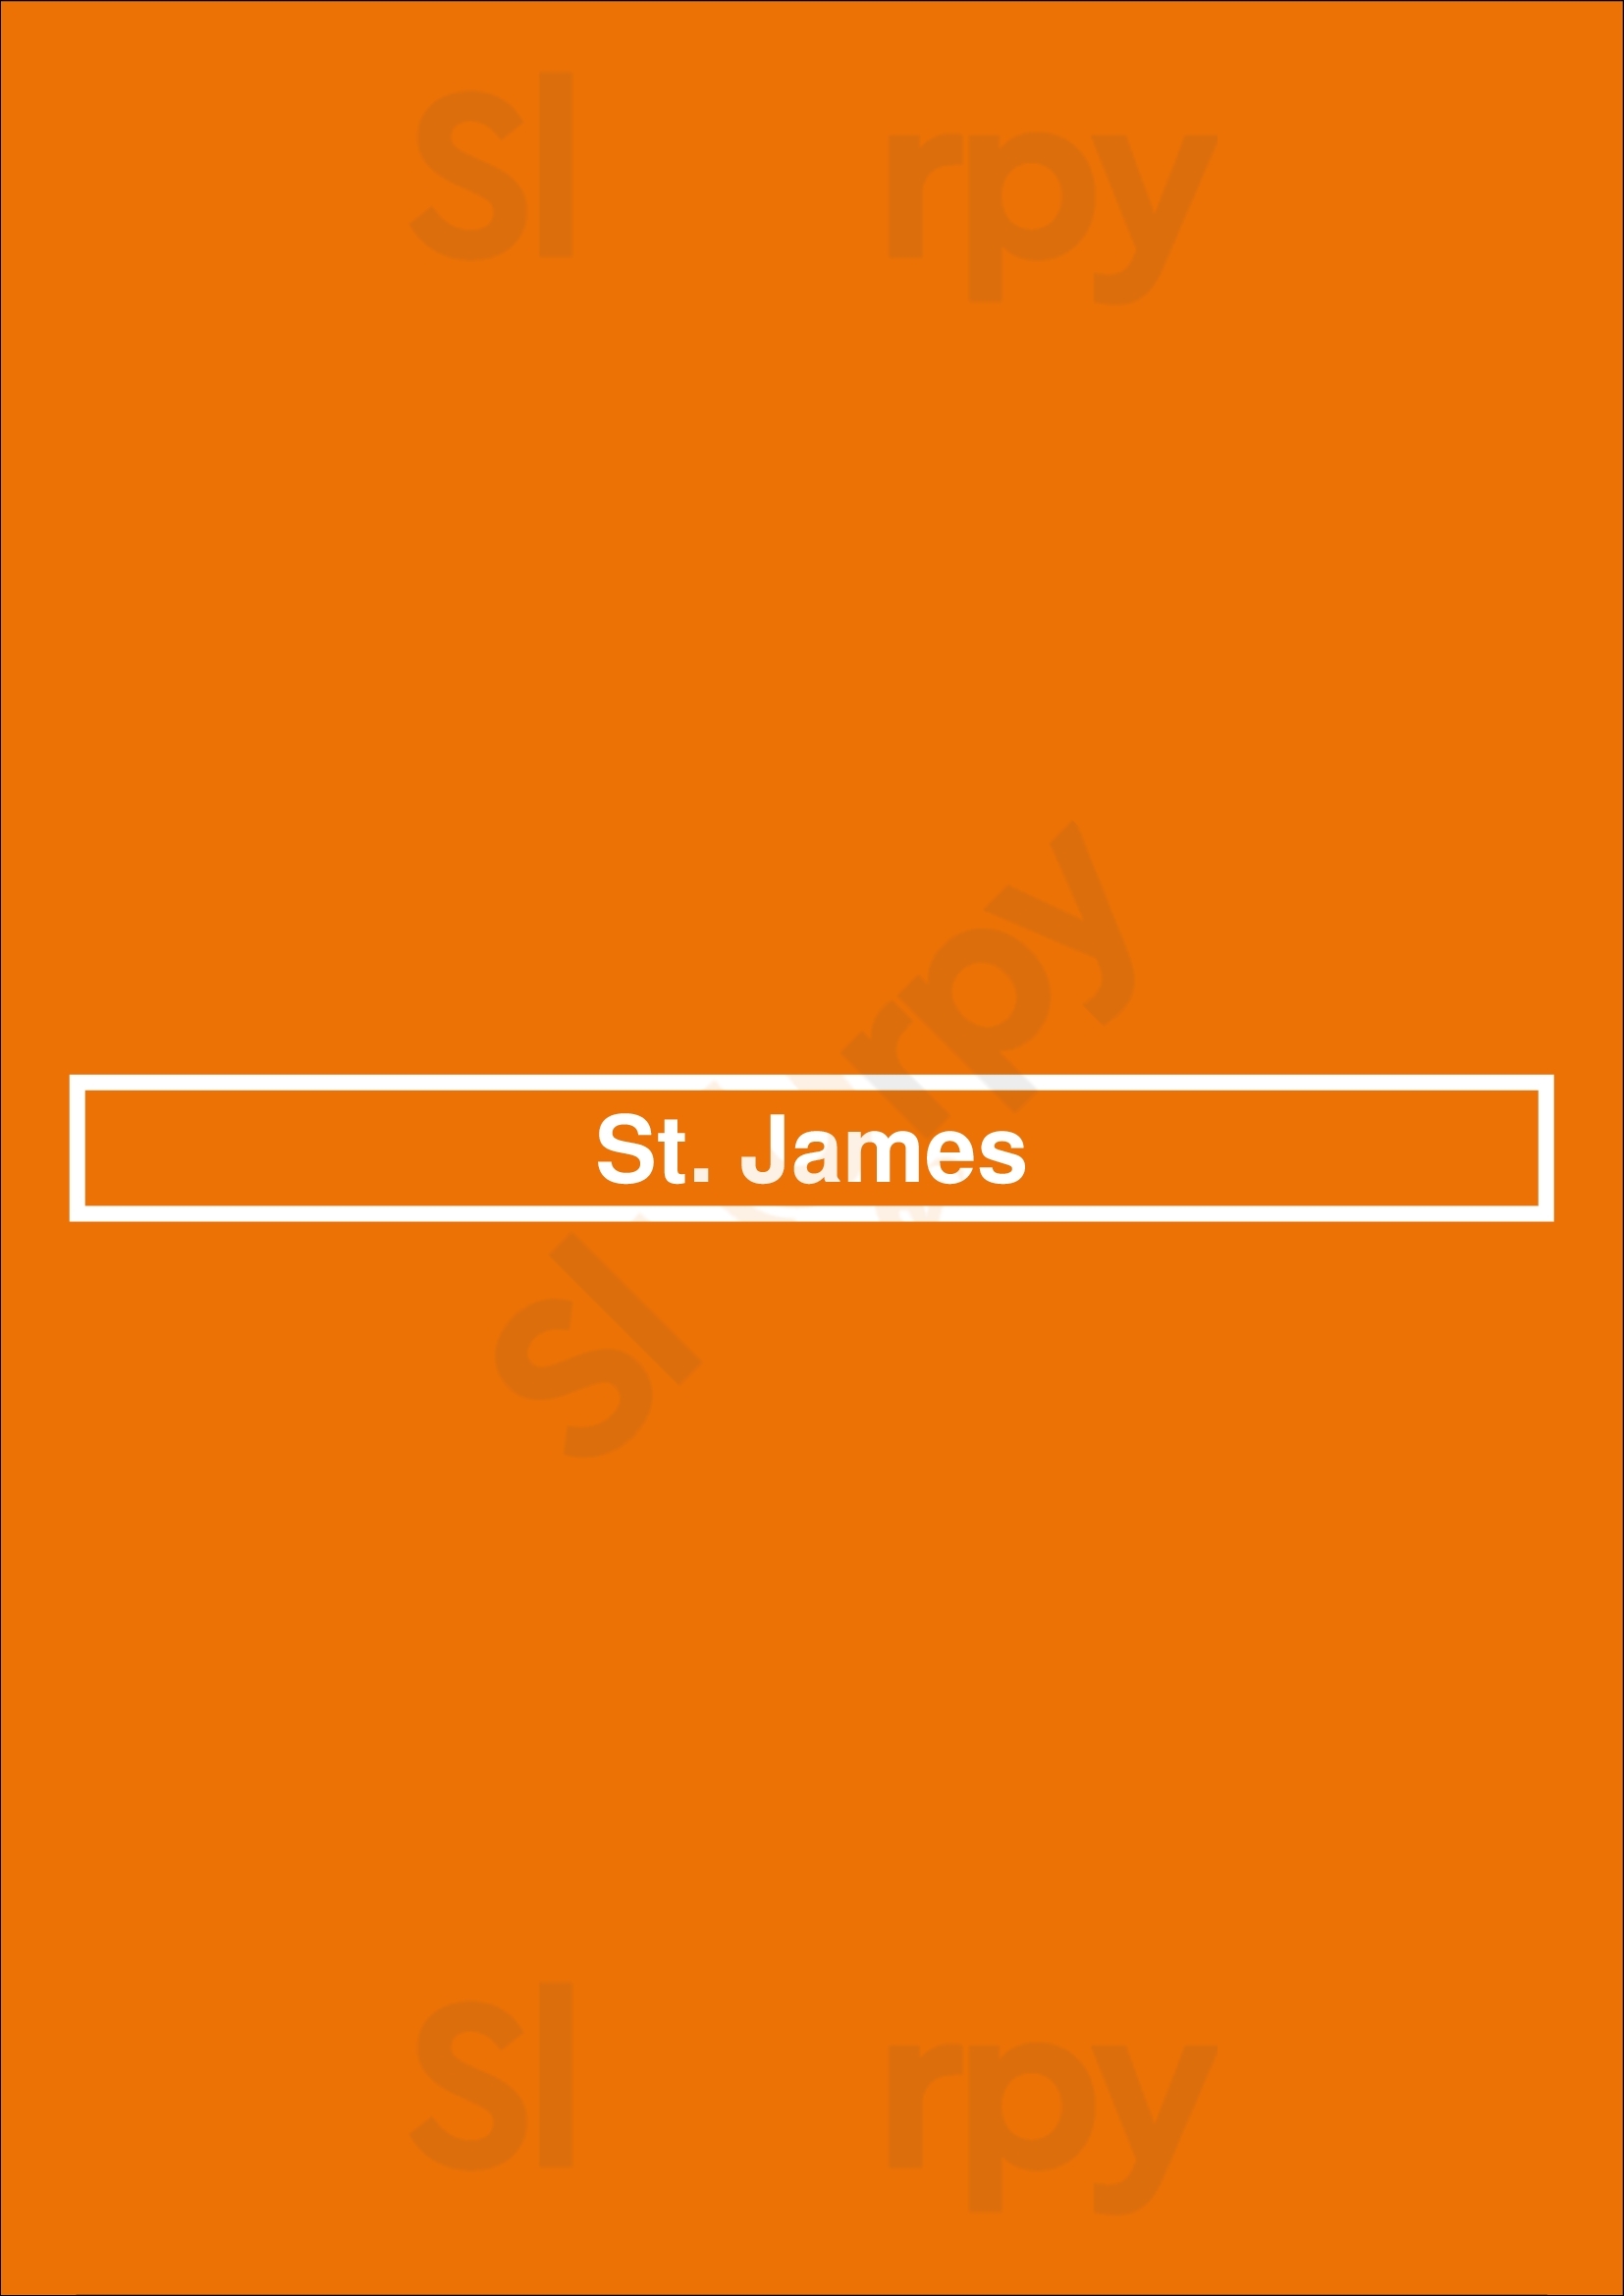 St. James Mannheim Menu - 1